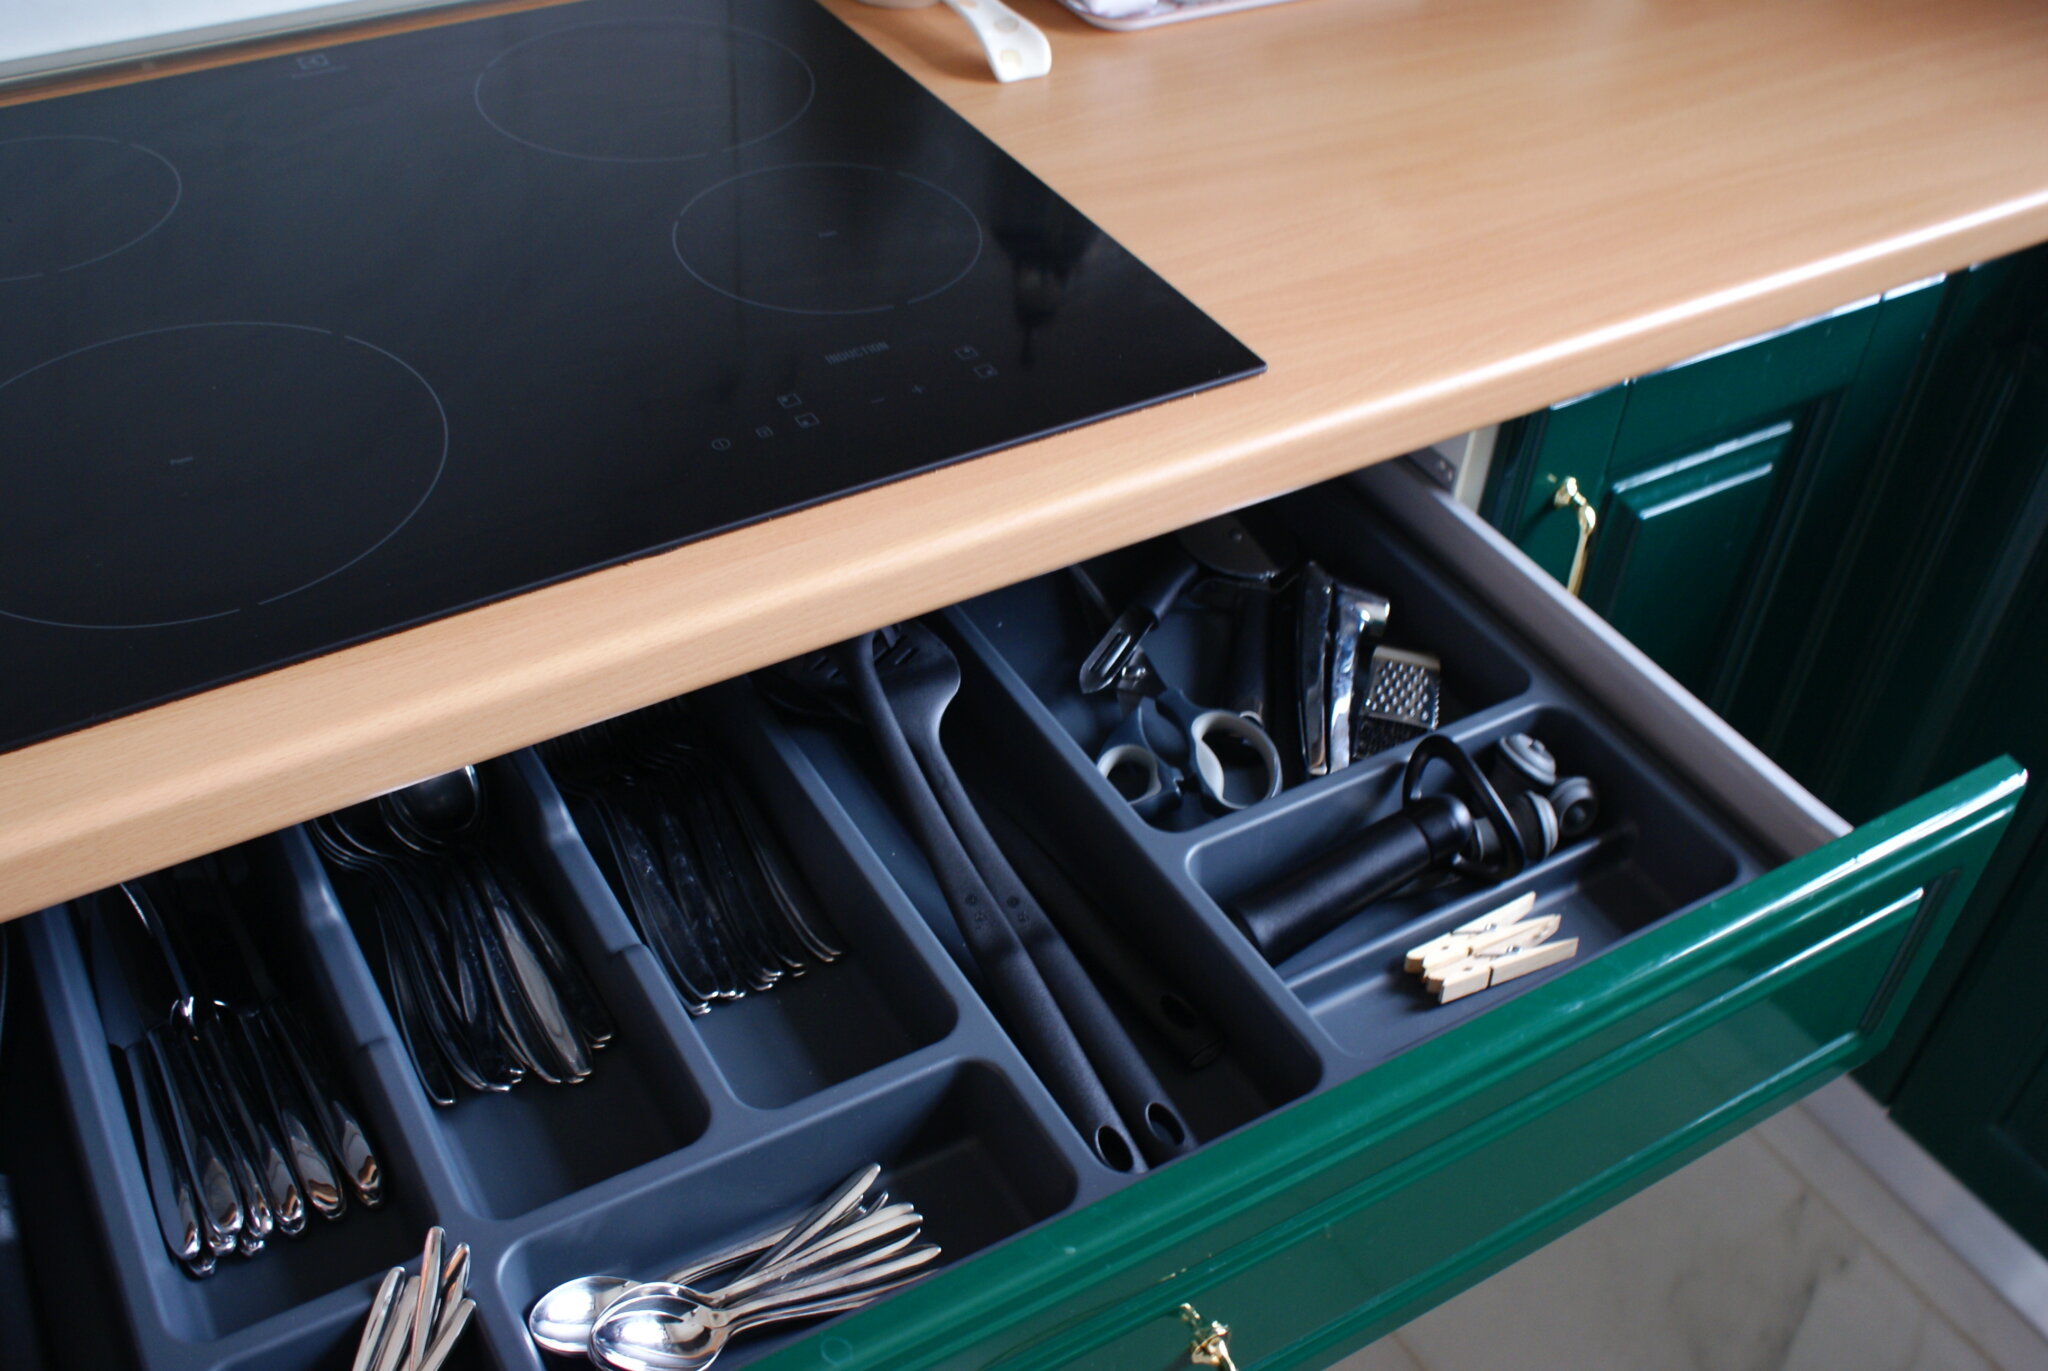 how declutter organize kitchen minimalist tips ulimate come organizzare riordinare cucina minimalista consigli drawers cassetti